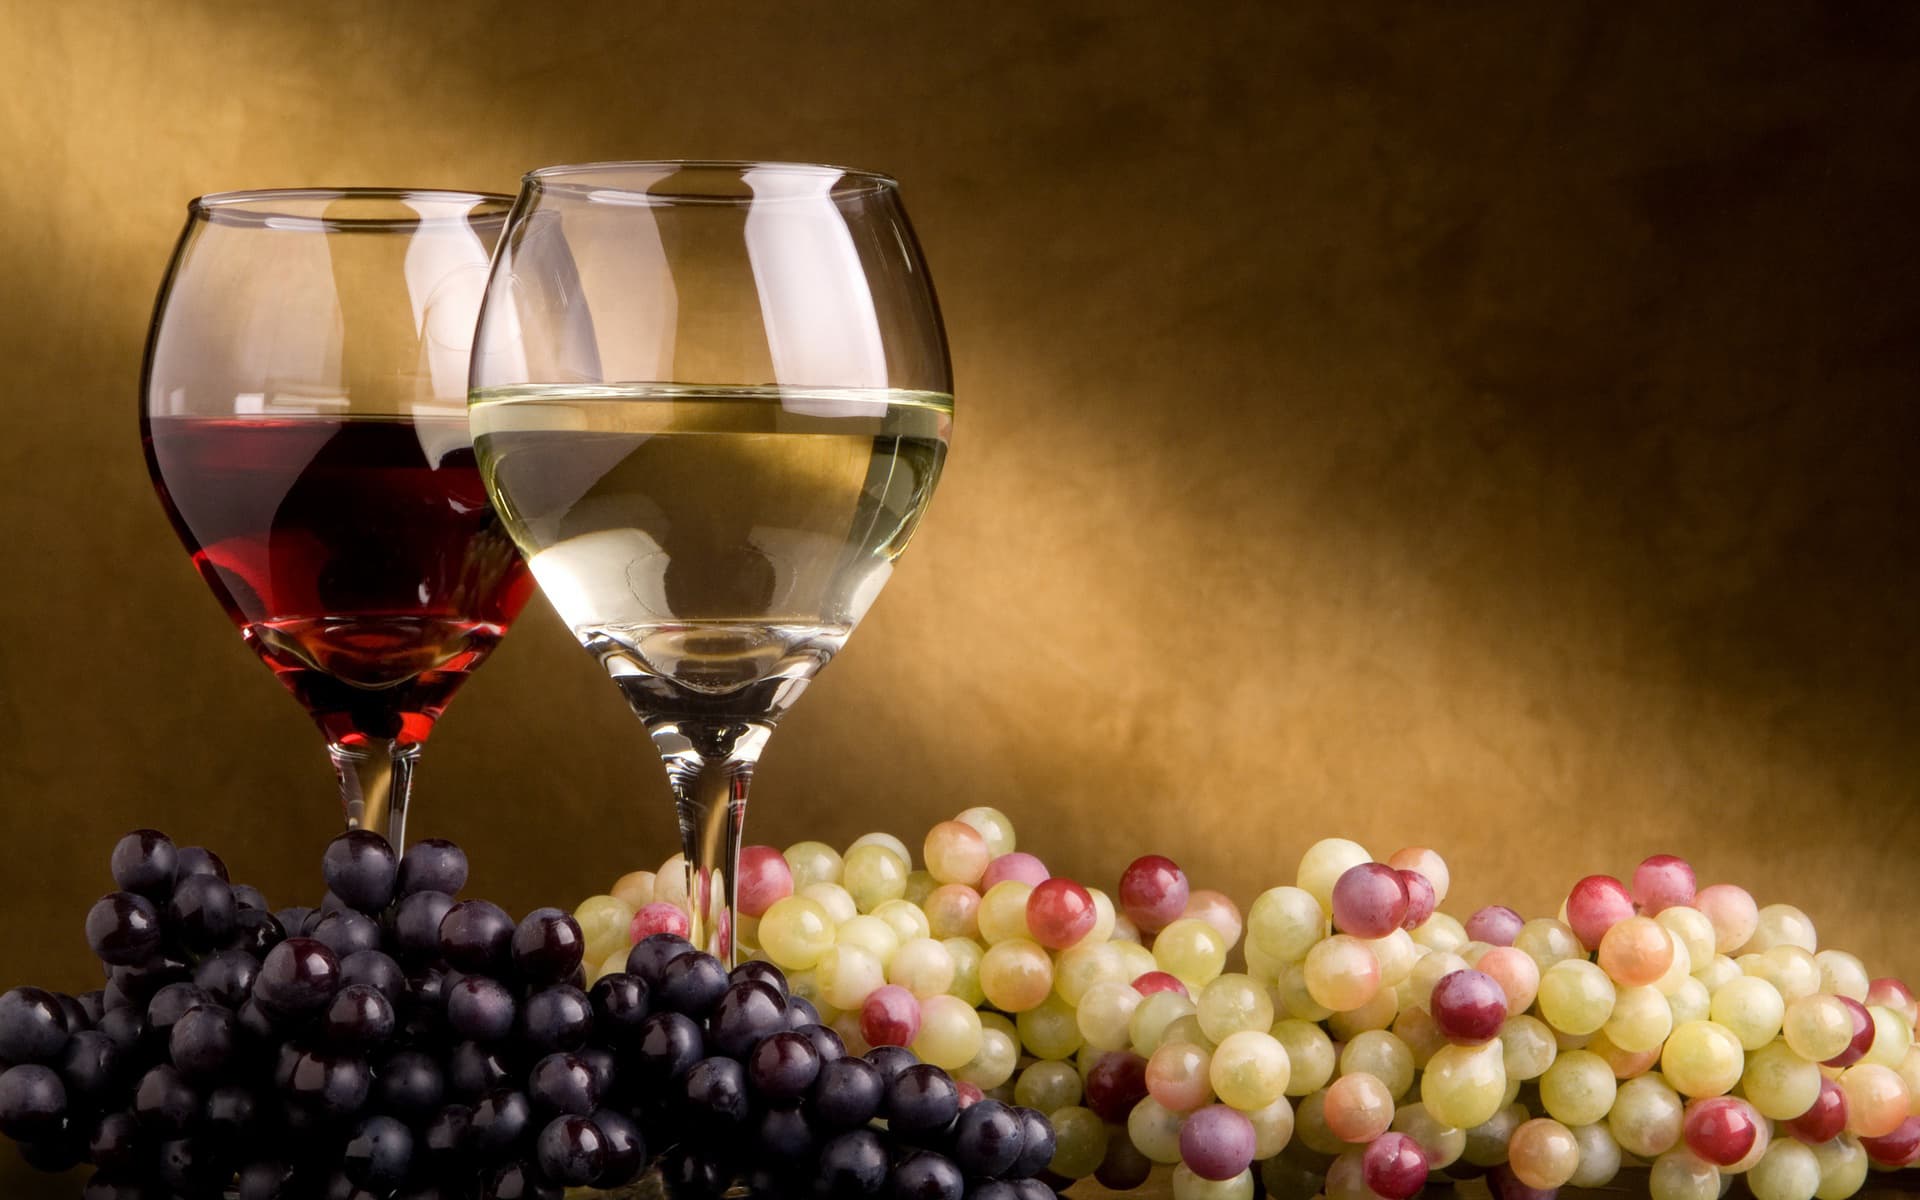 Категории вин по качеству Франция, Италия и другие страны